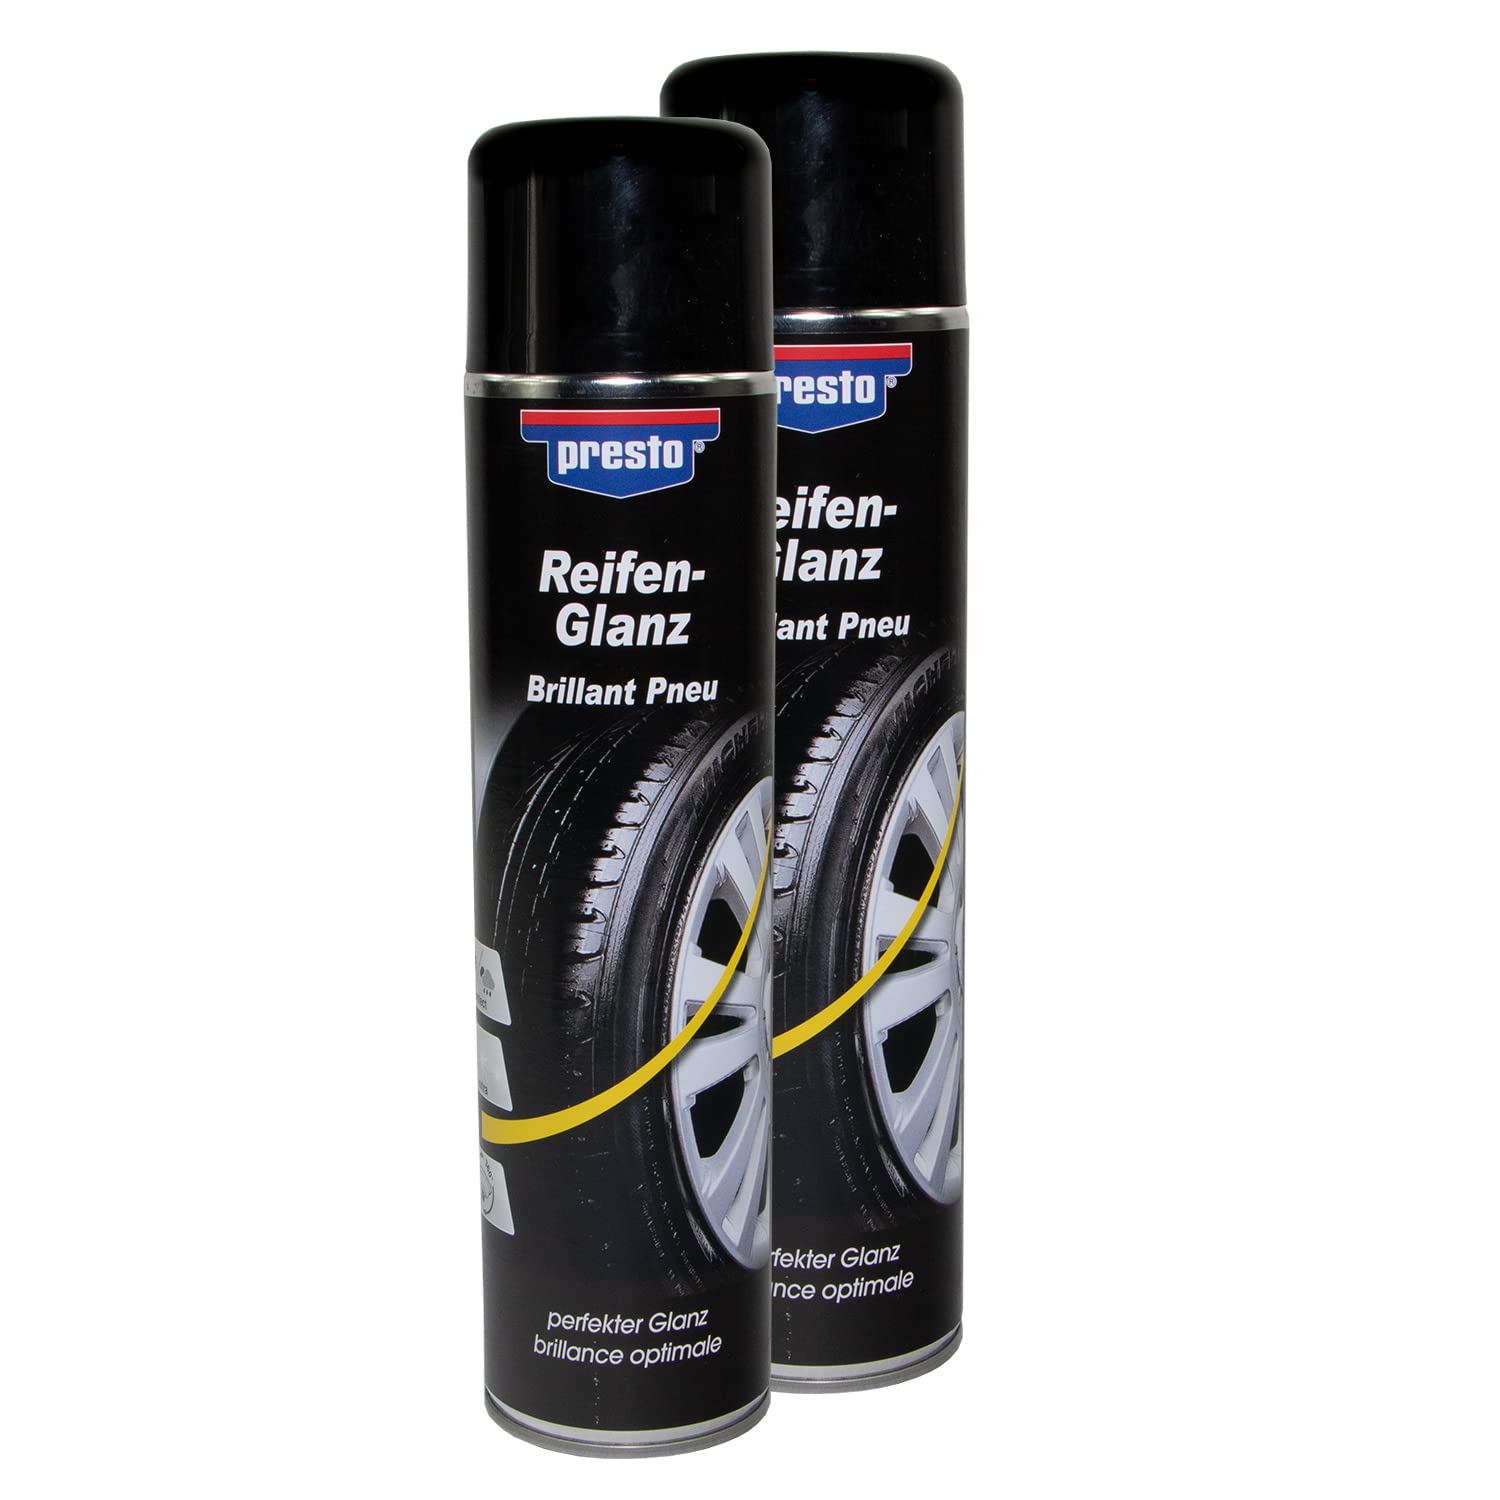 Reifenglanz Spray Reifenpflege Schutz Glanz Versiegelung Presto 383458 2 X 600 ml von PRESTO_bundle